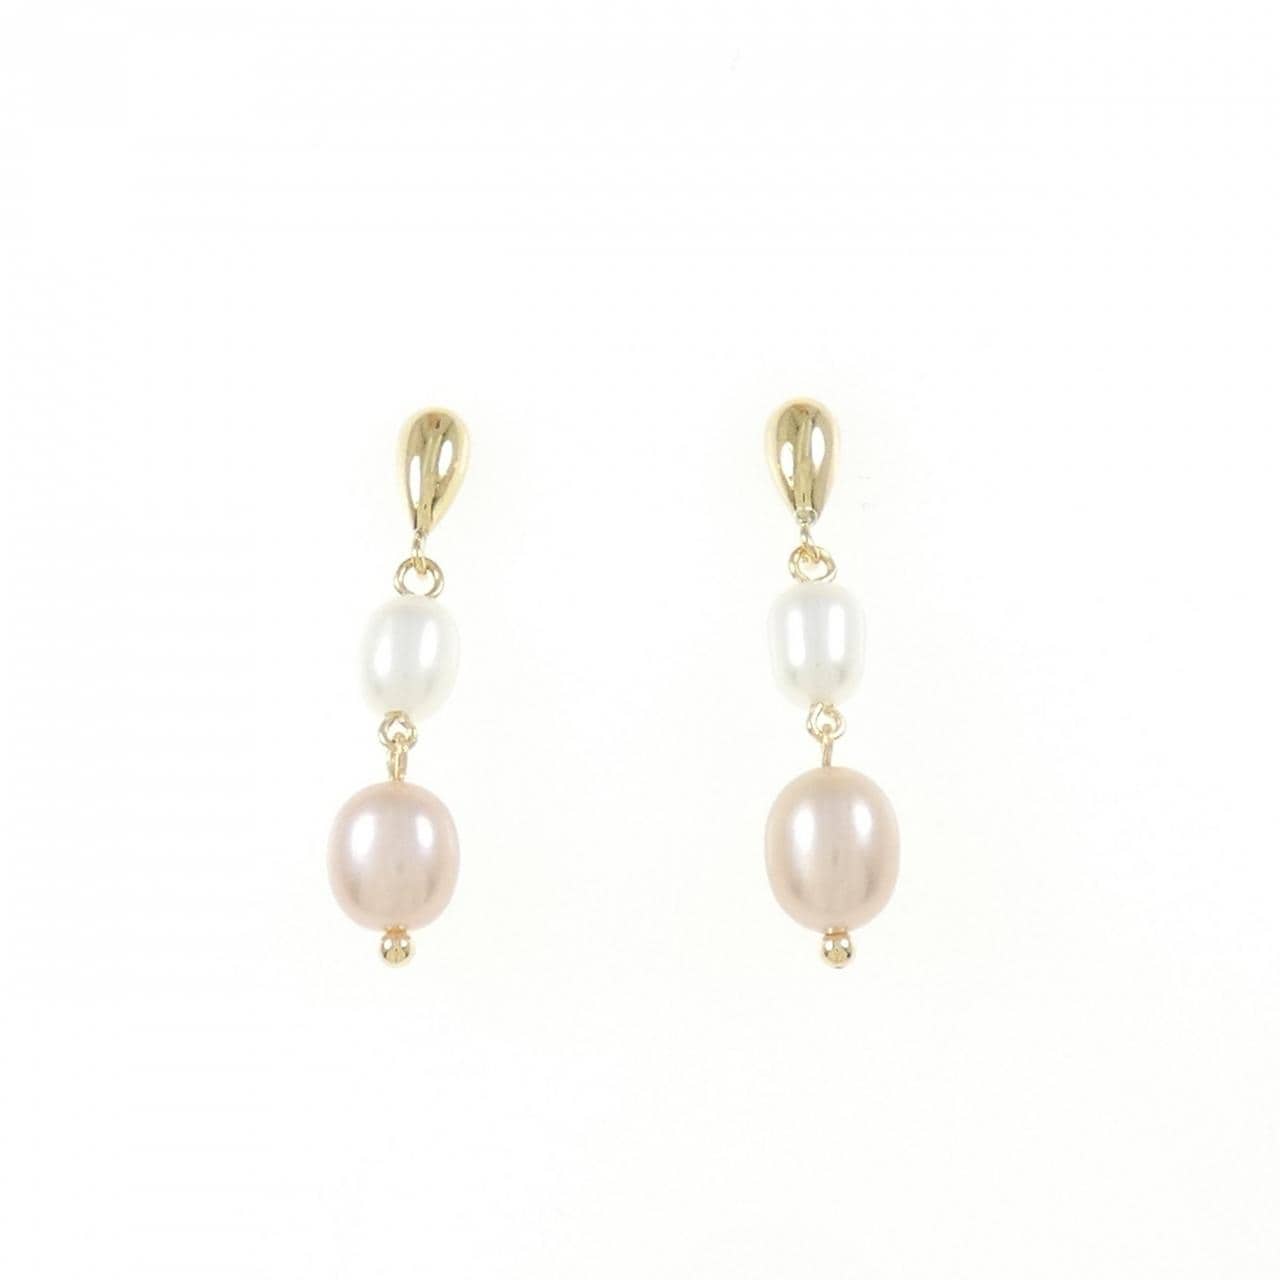 K18YG freshwater pearl earrings